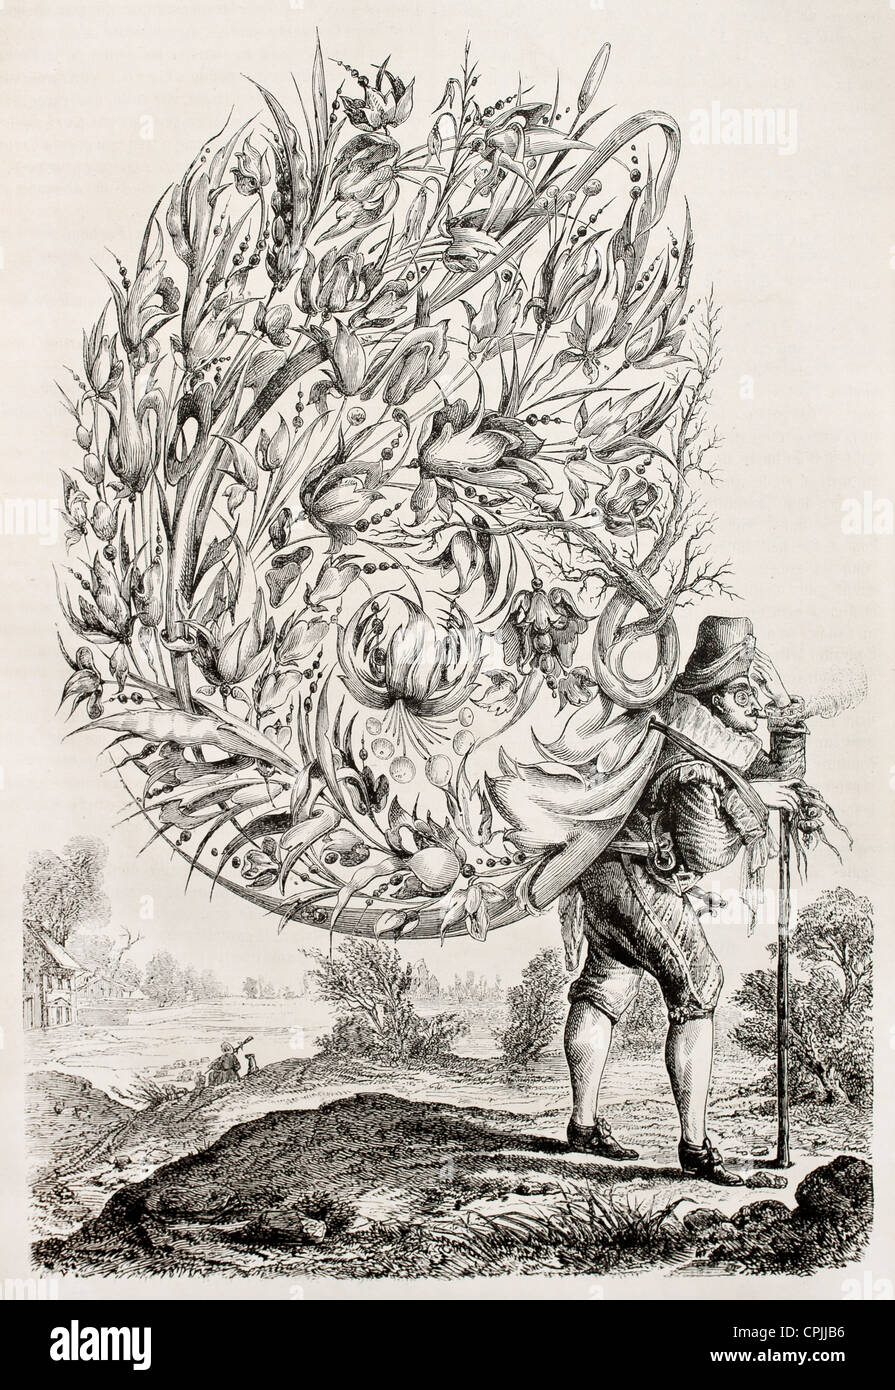 Sognatore spagnola del XVII secolo vecchio fantastico illustrazione (antica incisione attribuita a Abraham Bosse) Foto Stock